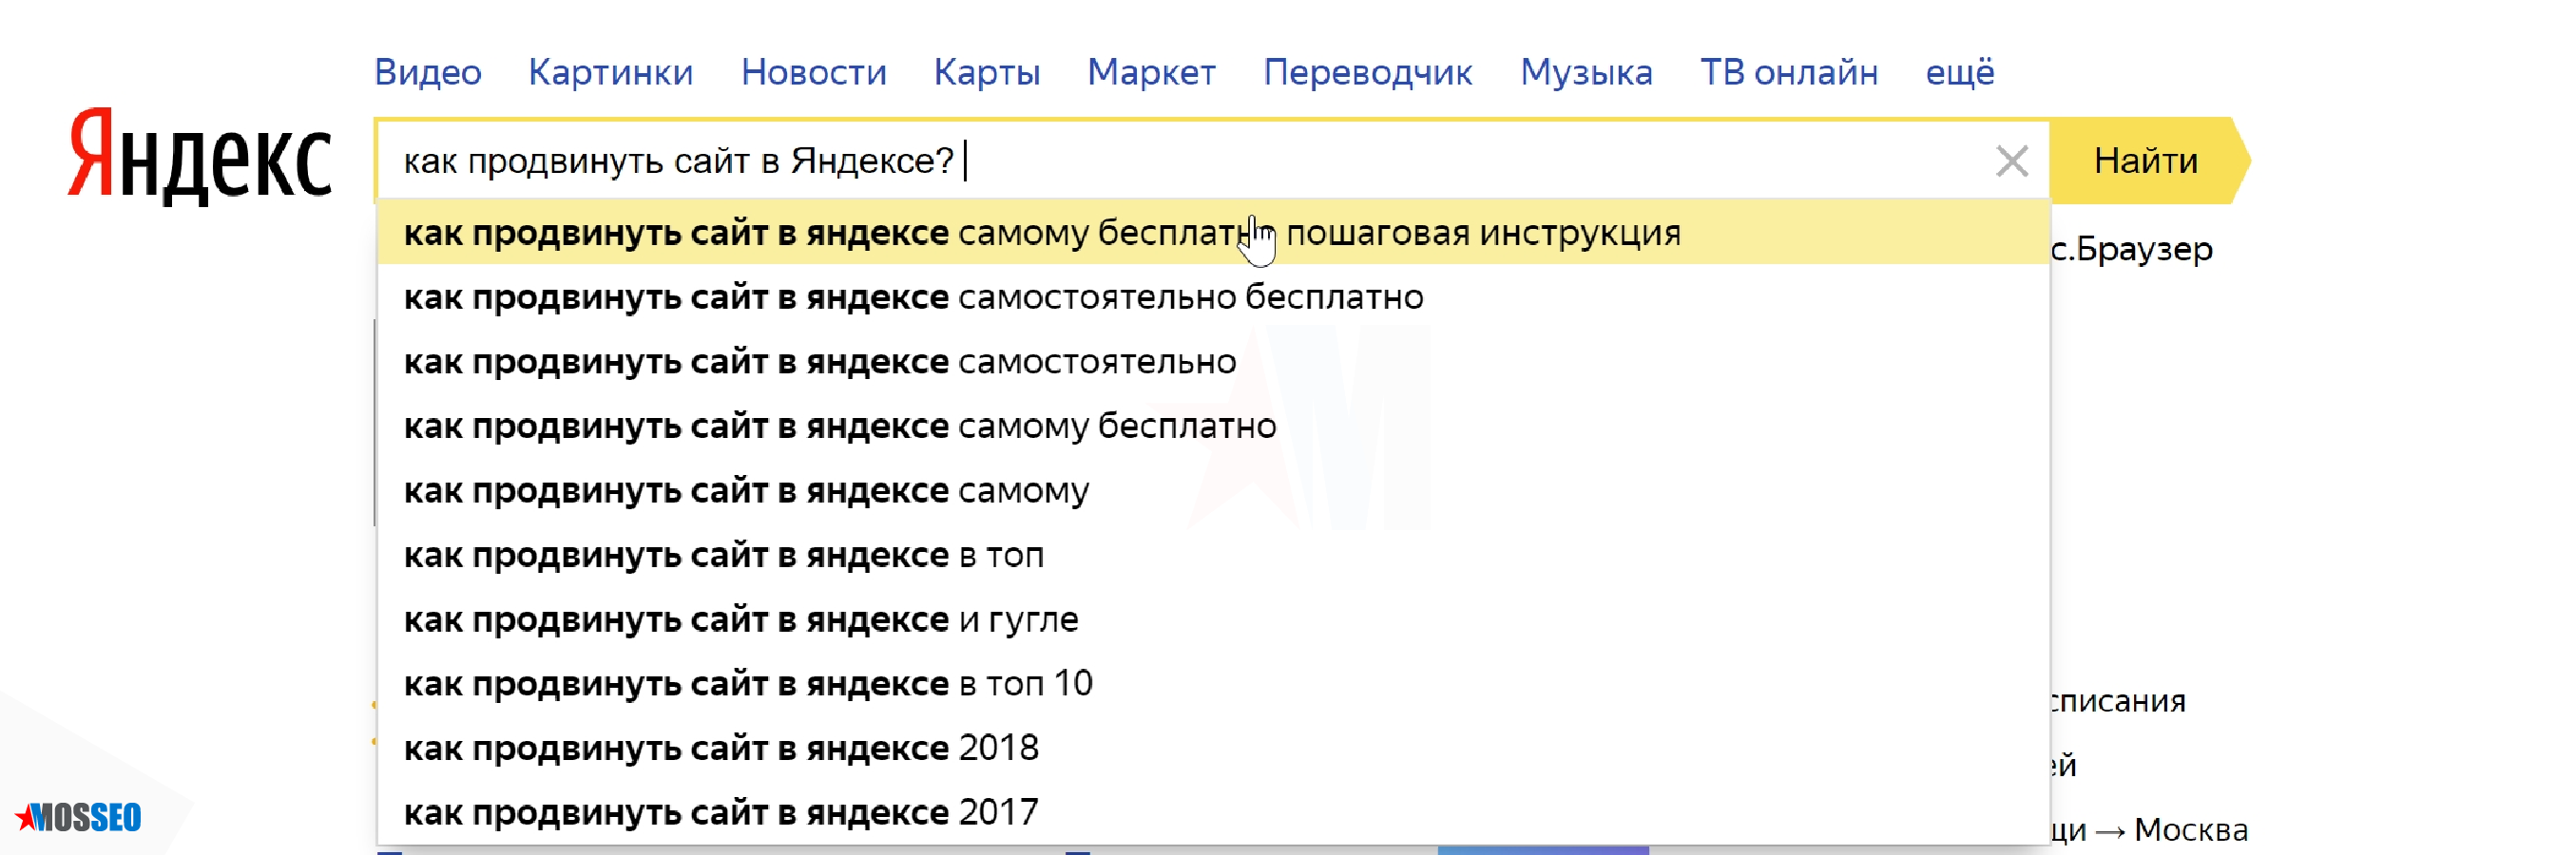 Продвижение картинок в Яндексе